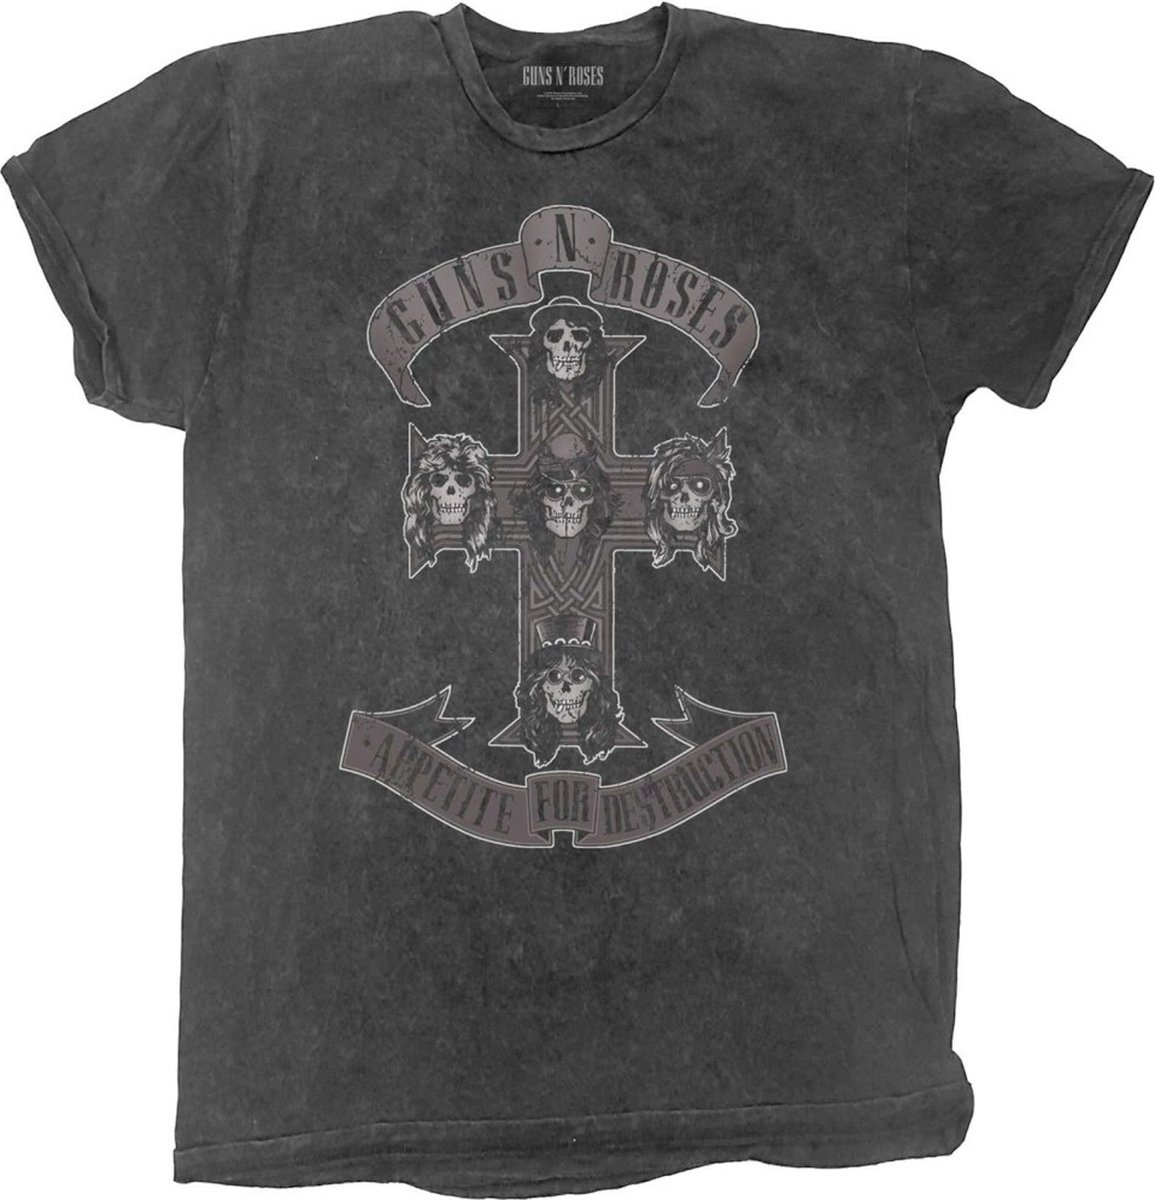 Guns N' Roses - Monochrome Cross Kinder T-shirt - Kids tm 8 jaar - Zwart